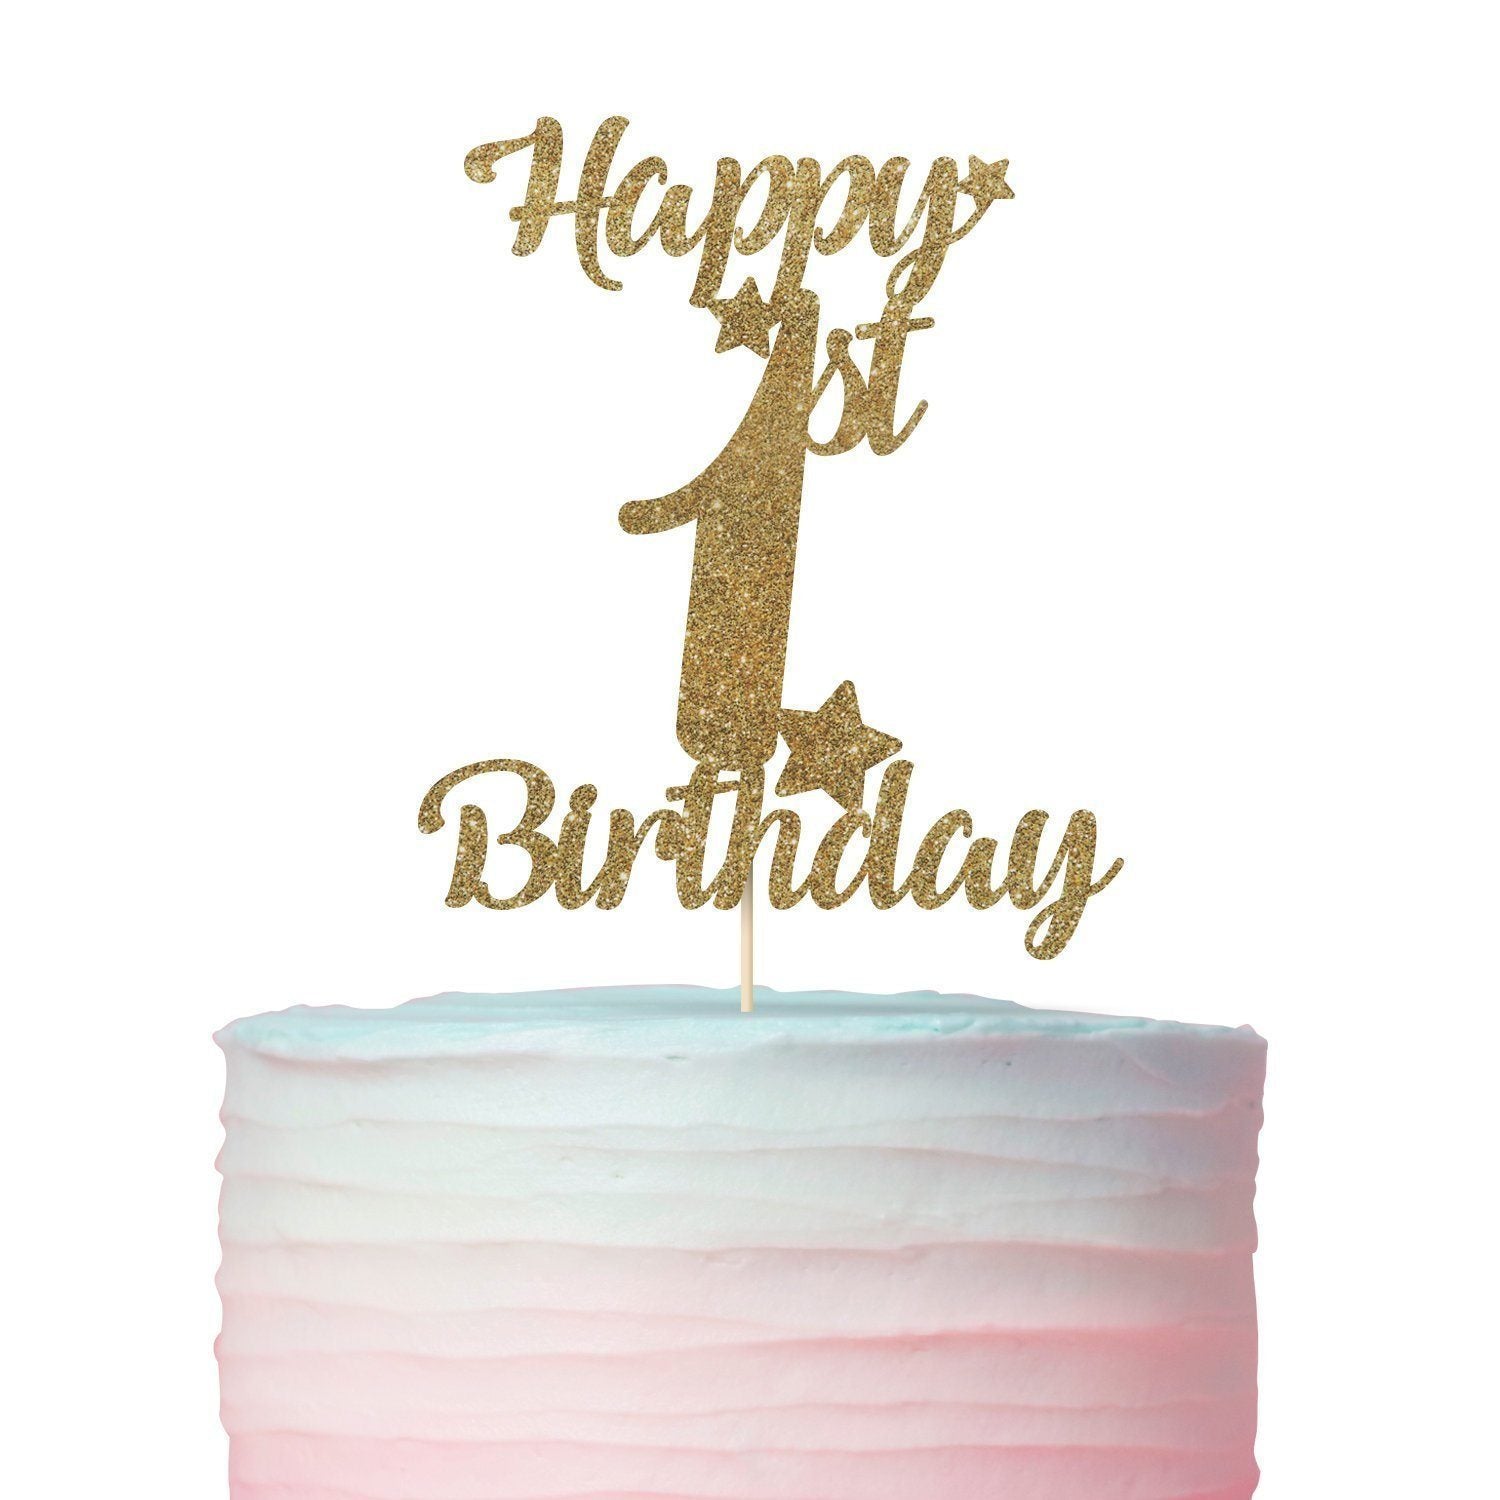 Thiết kế cake decorations 1st birthday độc đáo cho sinh nhật lần ...